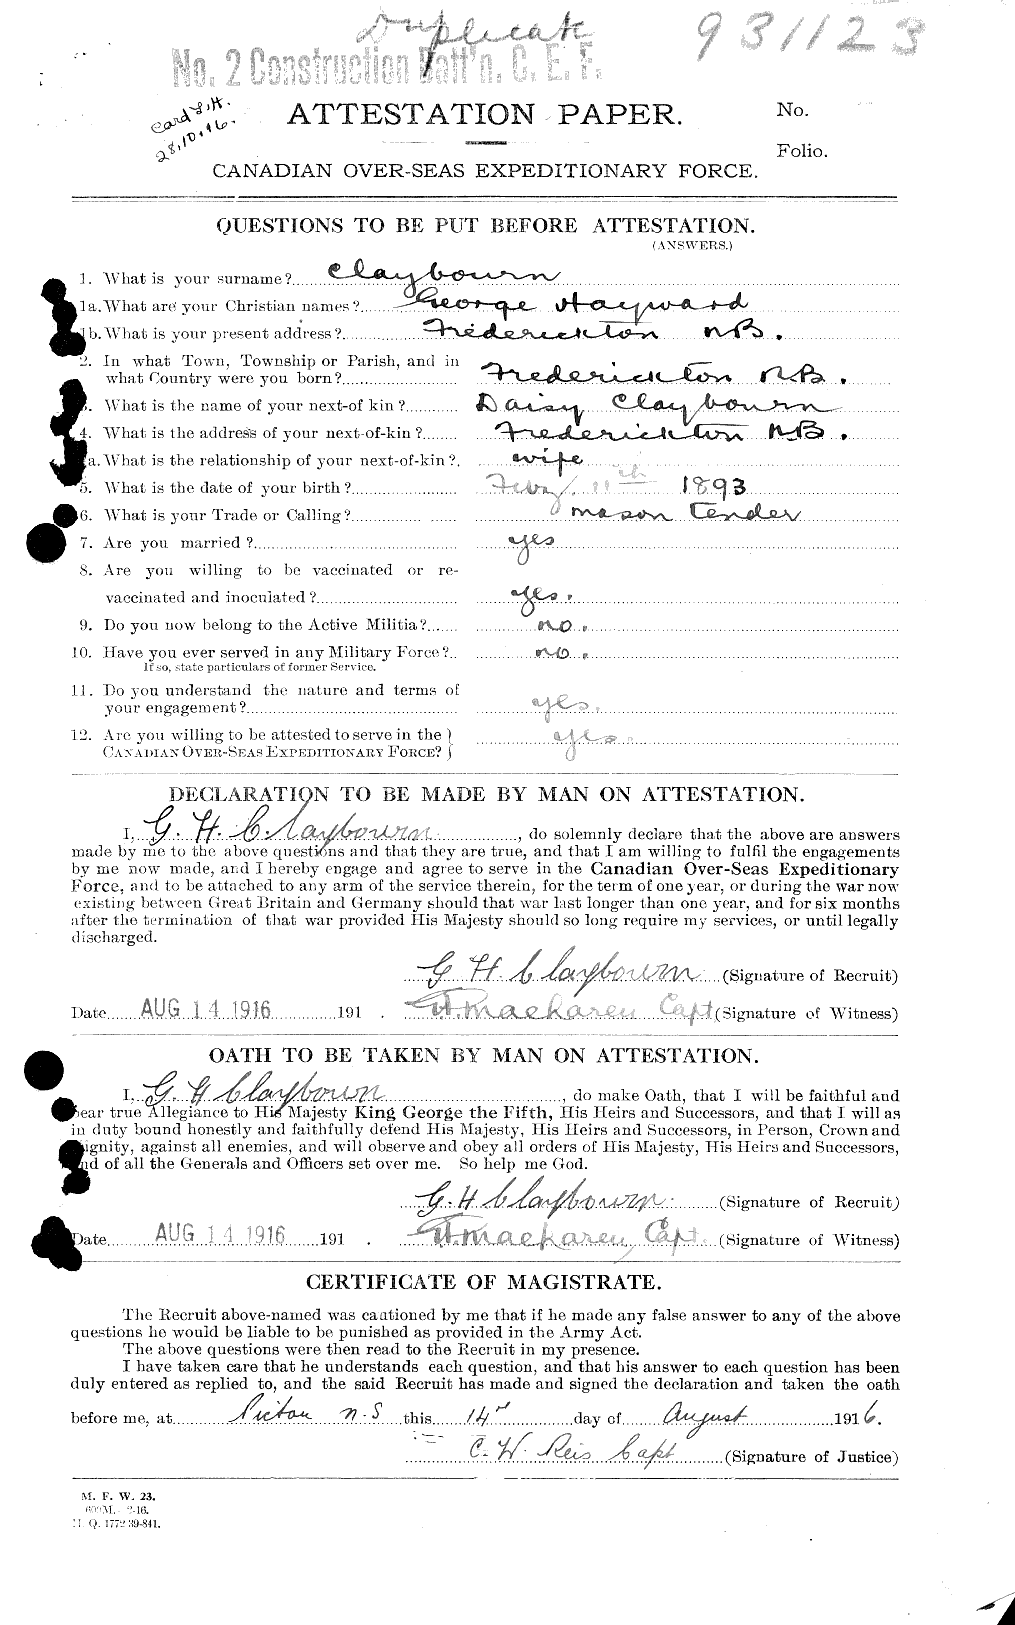 Dossiers du Personnel de la Première Guerre mondiale - CEC 019227a